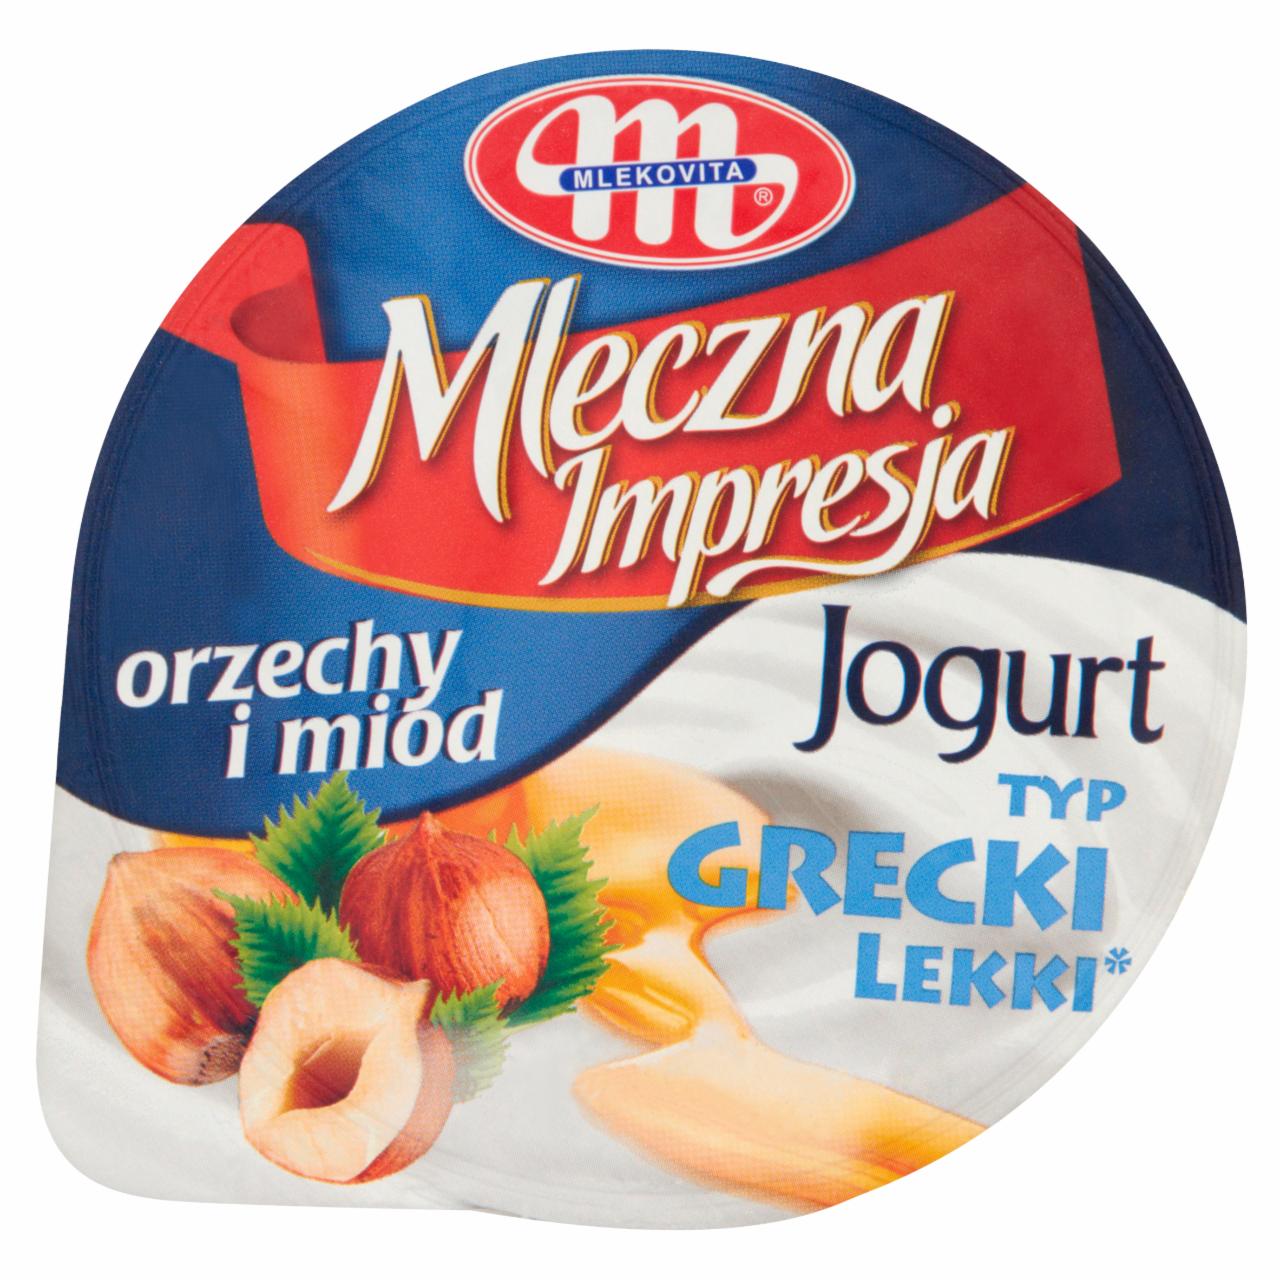 Zdjęcia - Mlekovita Mleczna Impresja Jogurt typ grecki lekki orzechy i miód 150 g